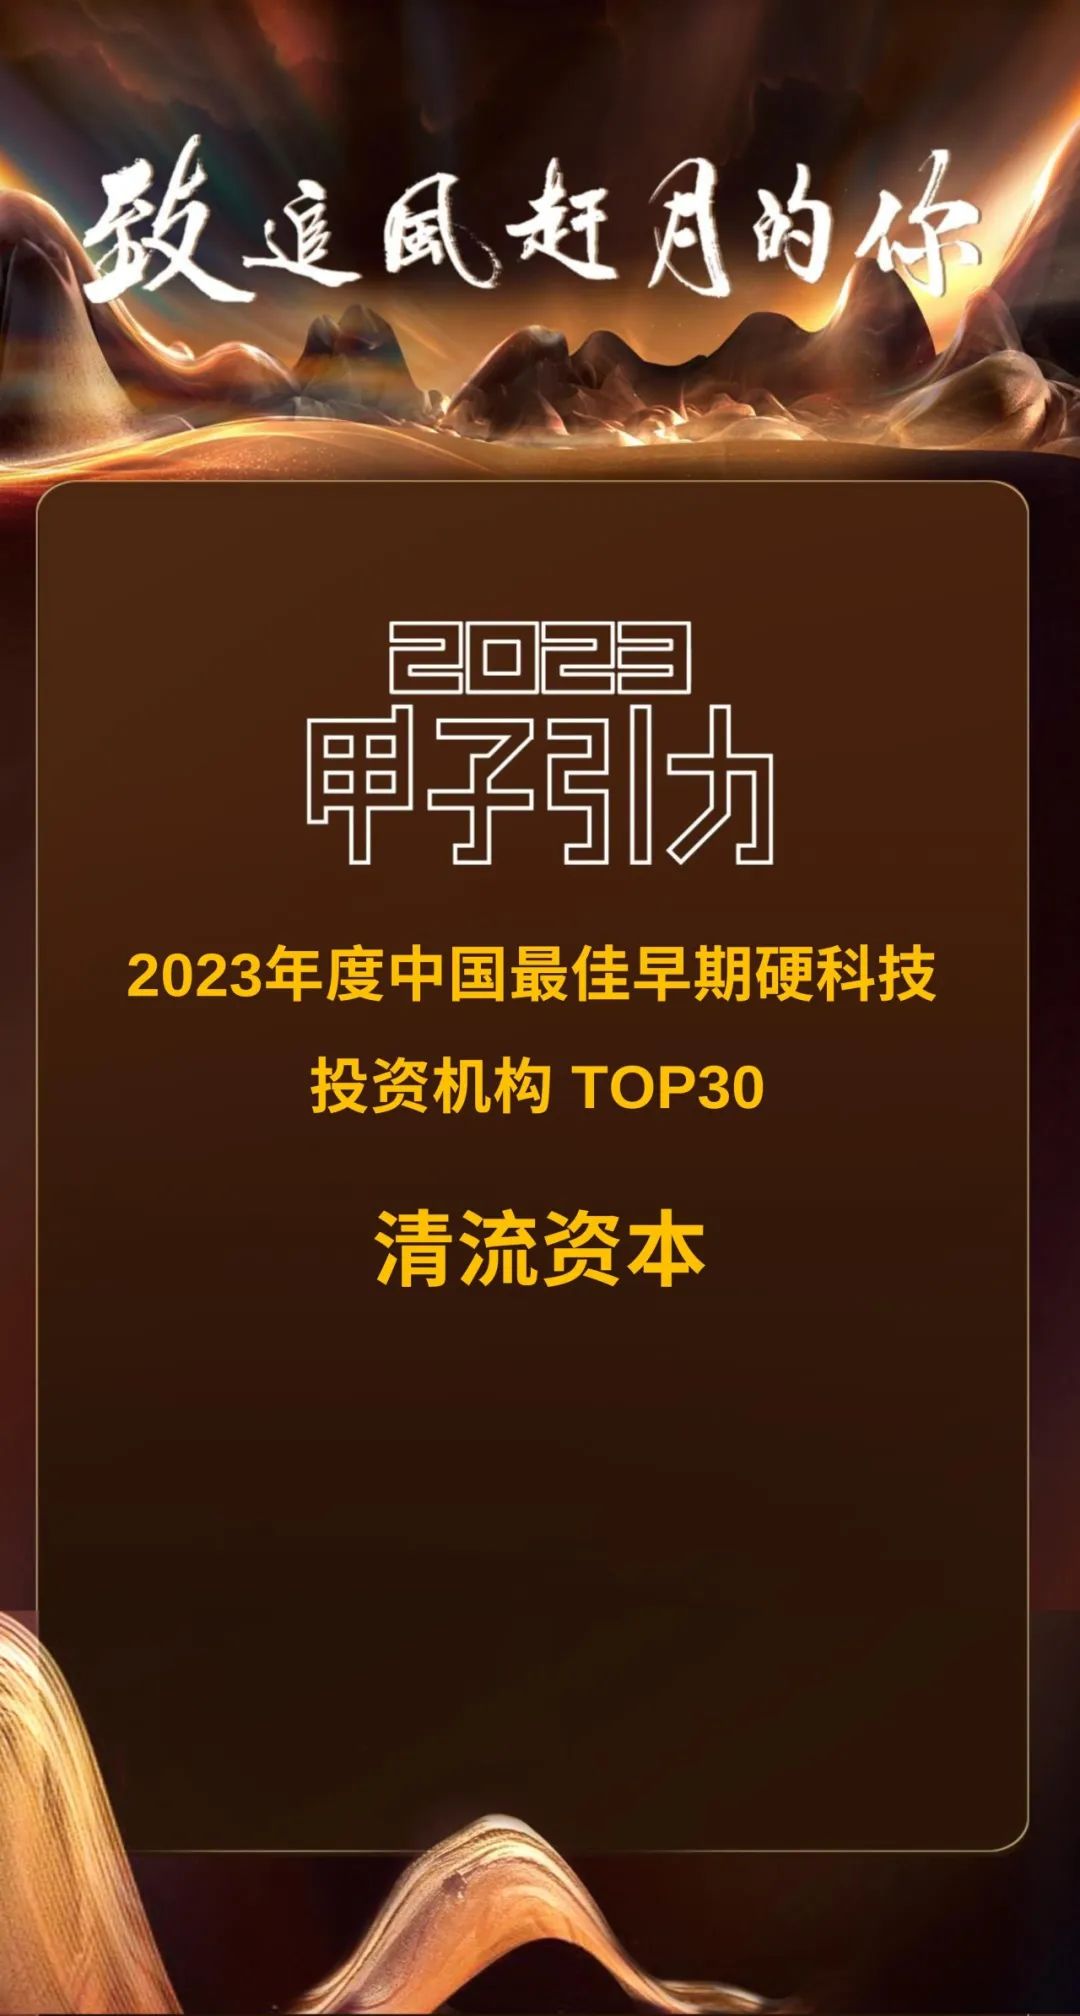 清流资本被甲子光年评为「2023年度中国最佳早期硬科技投资机构TOP30」